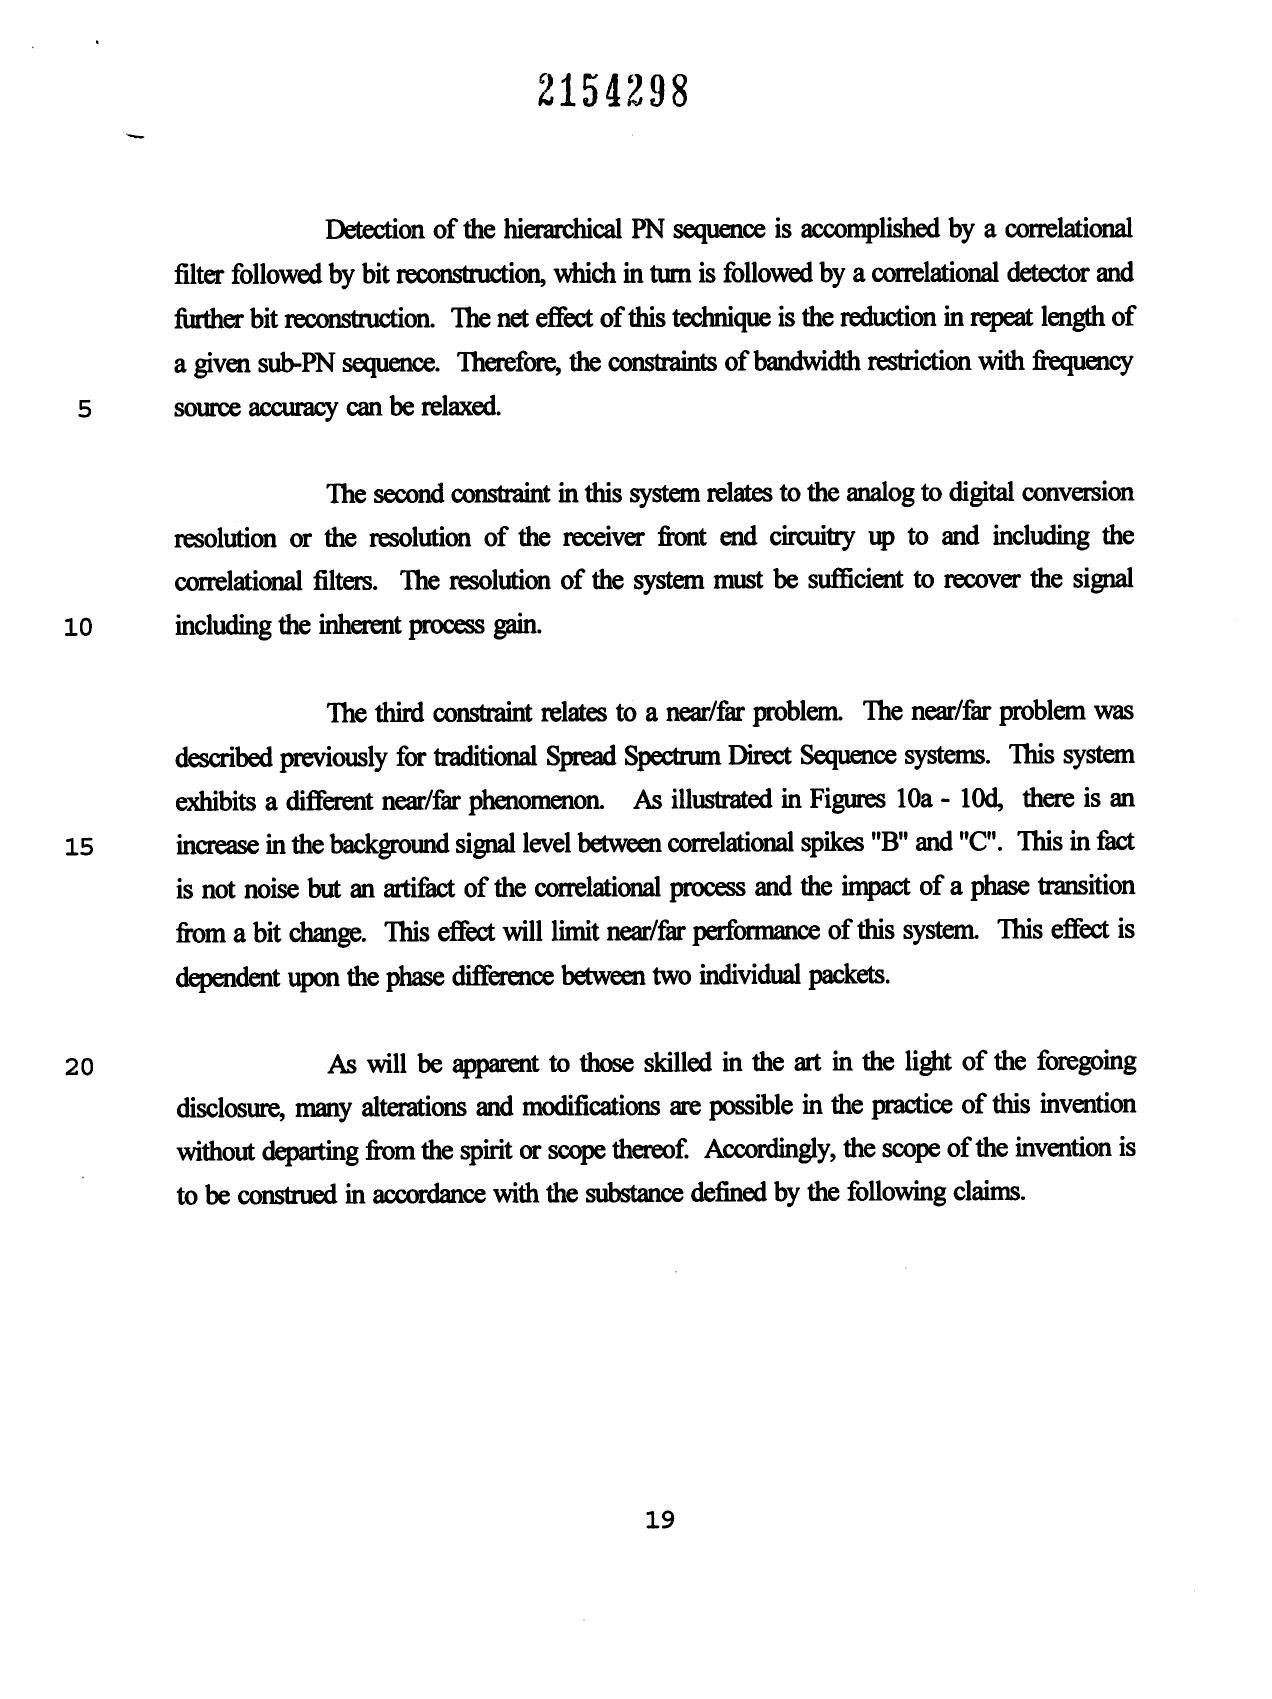 Canadian Patent Document 2154298. Description 19951224. Image 19 of 19